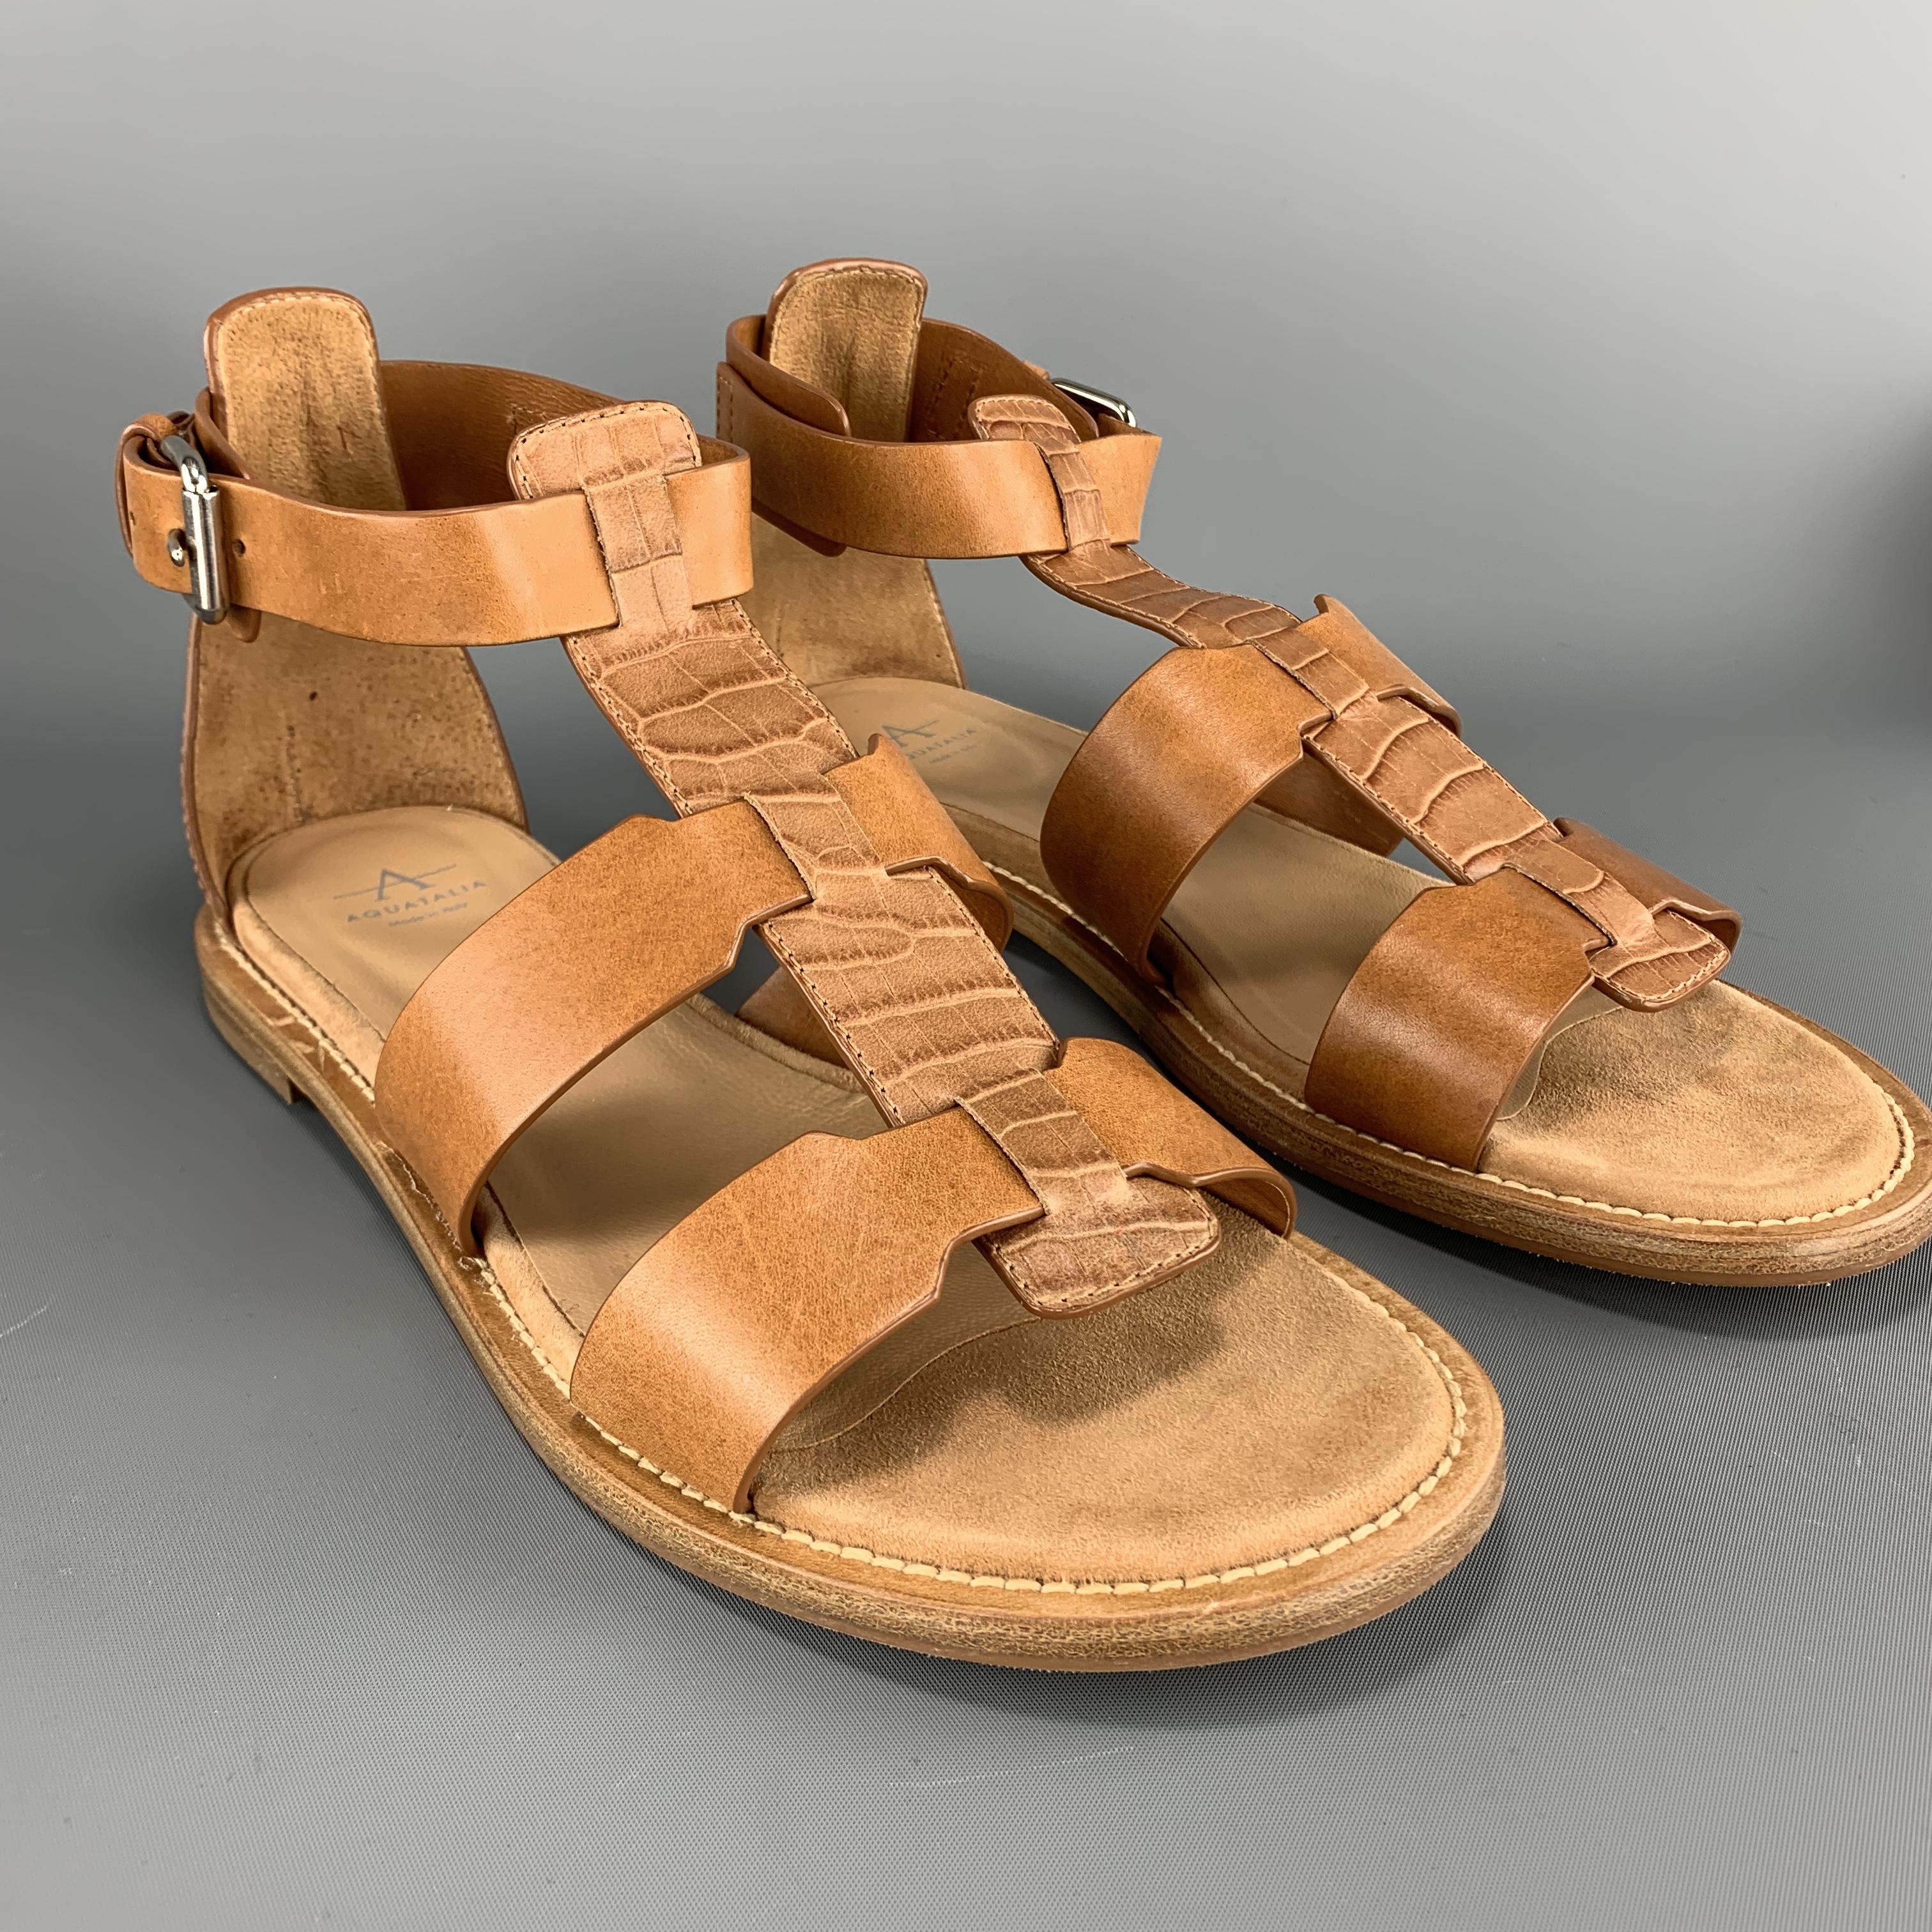 aquatalia gladiator sandals